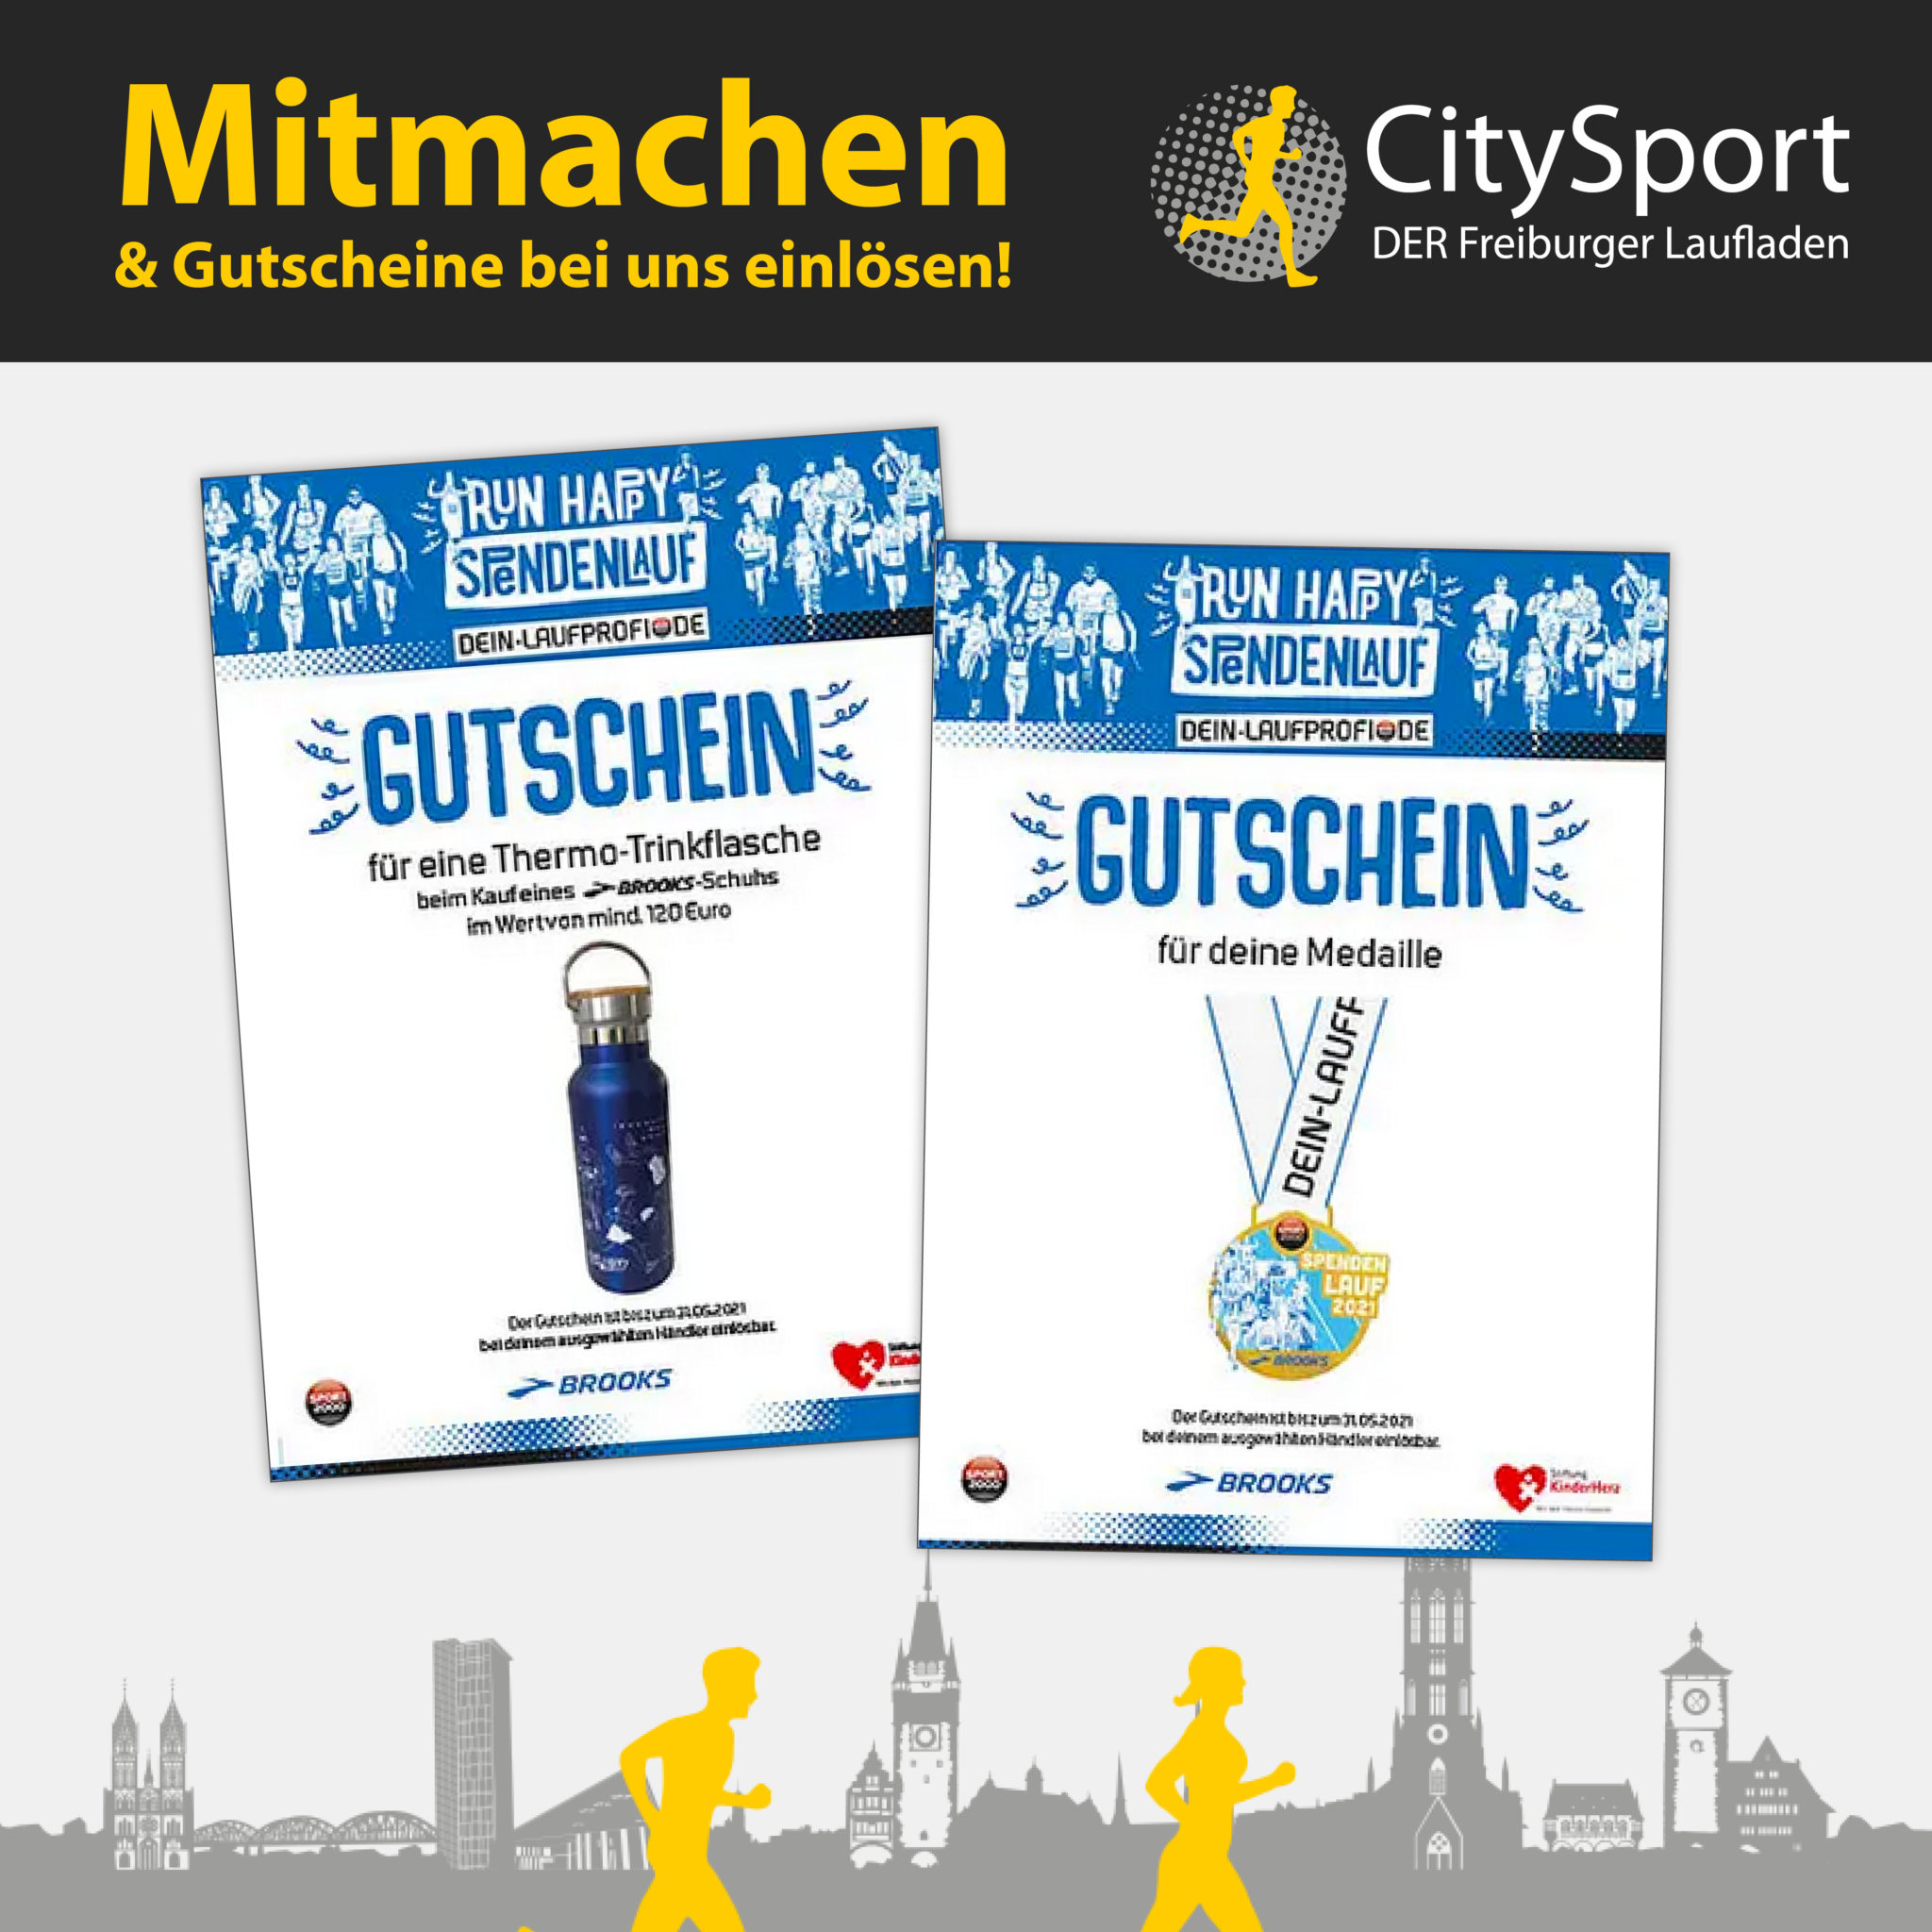 CitySport Freiburg │ DER Freiburger Laufladen